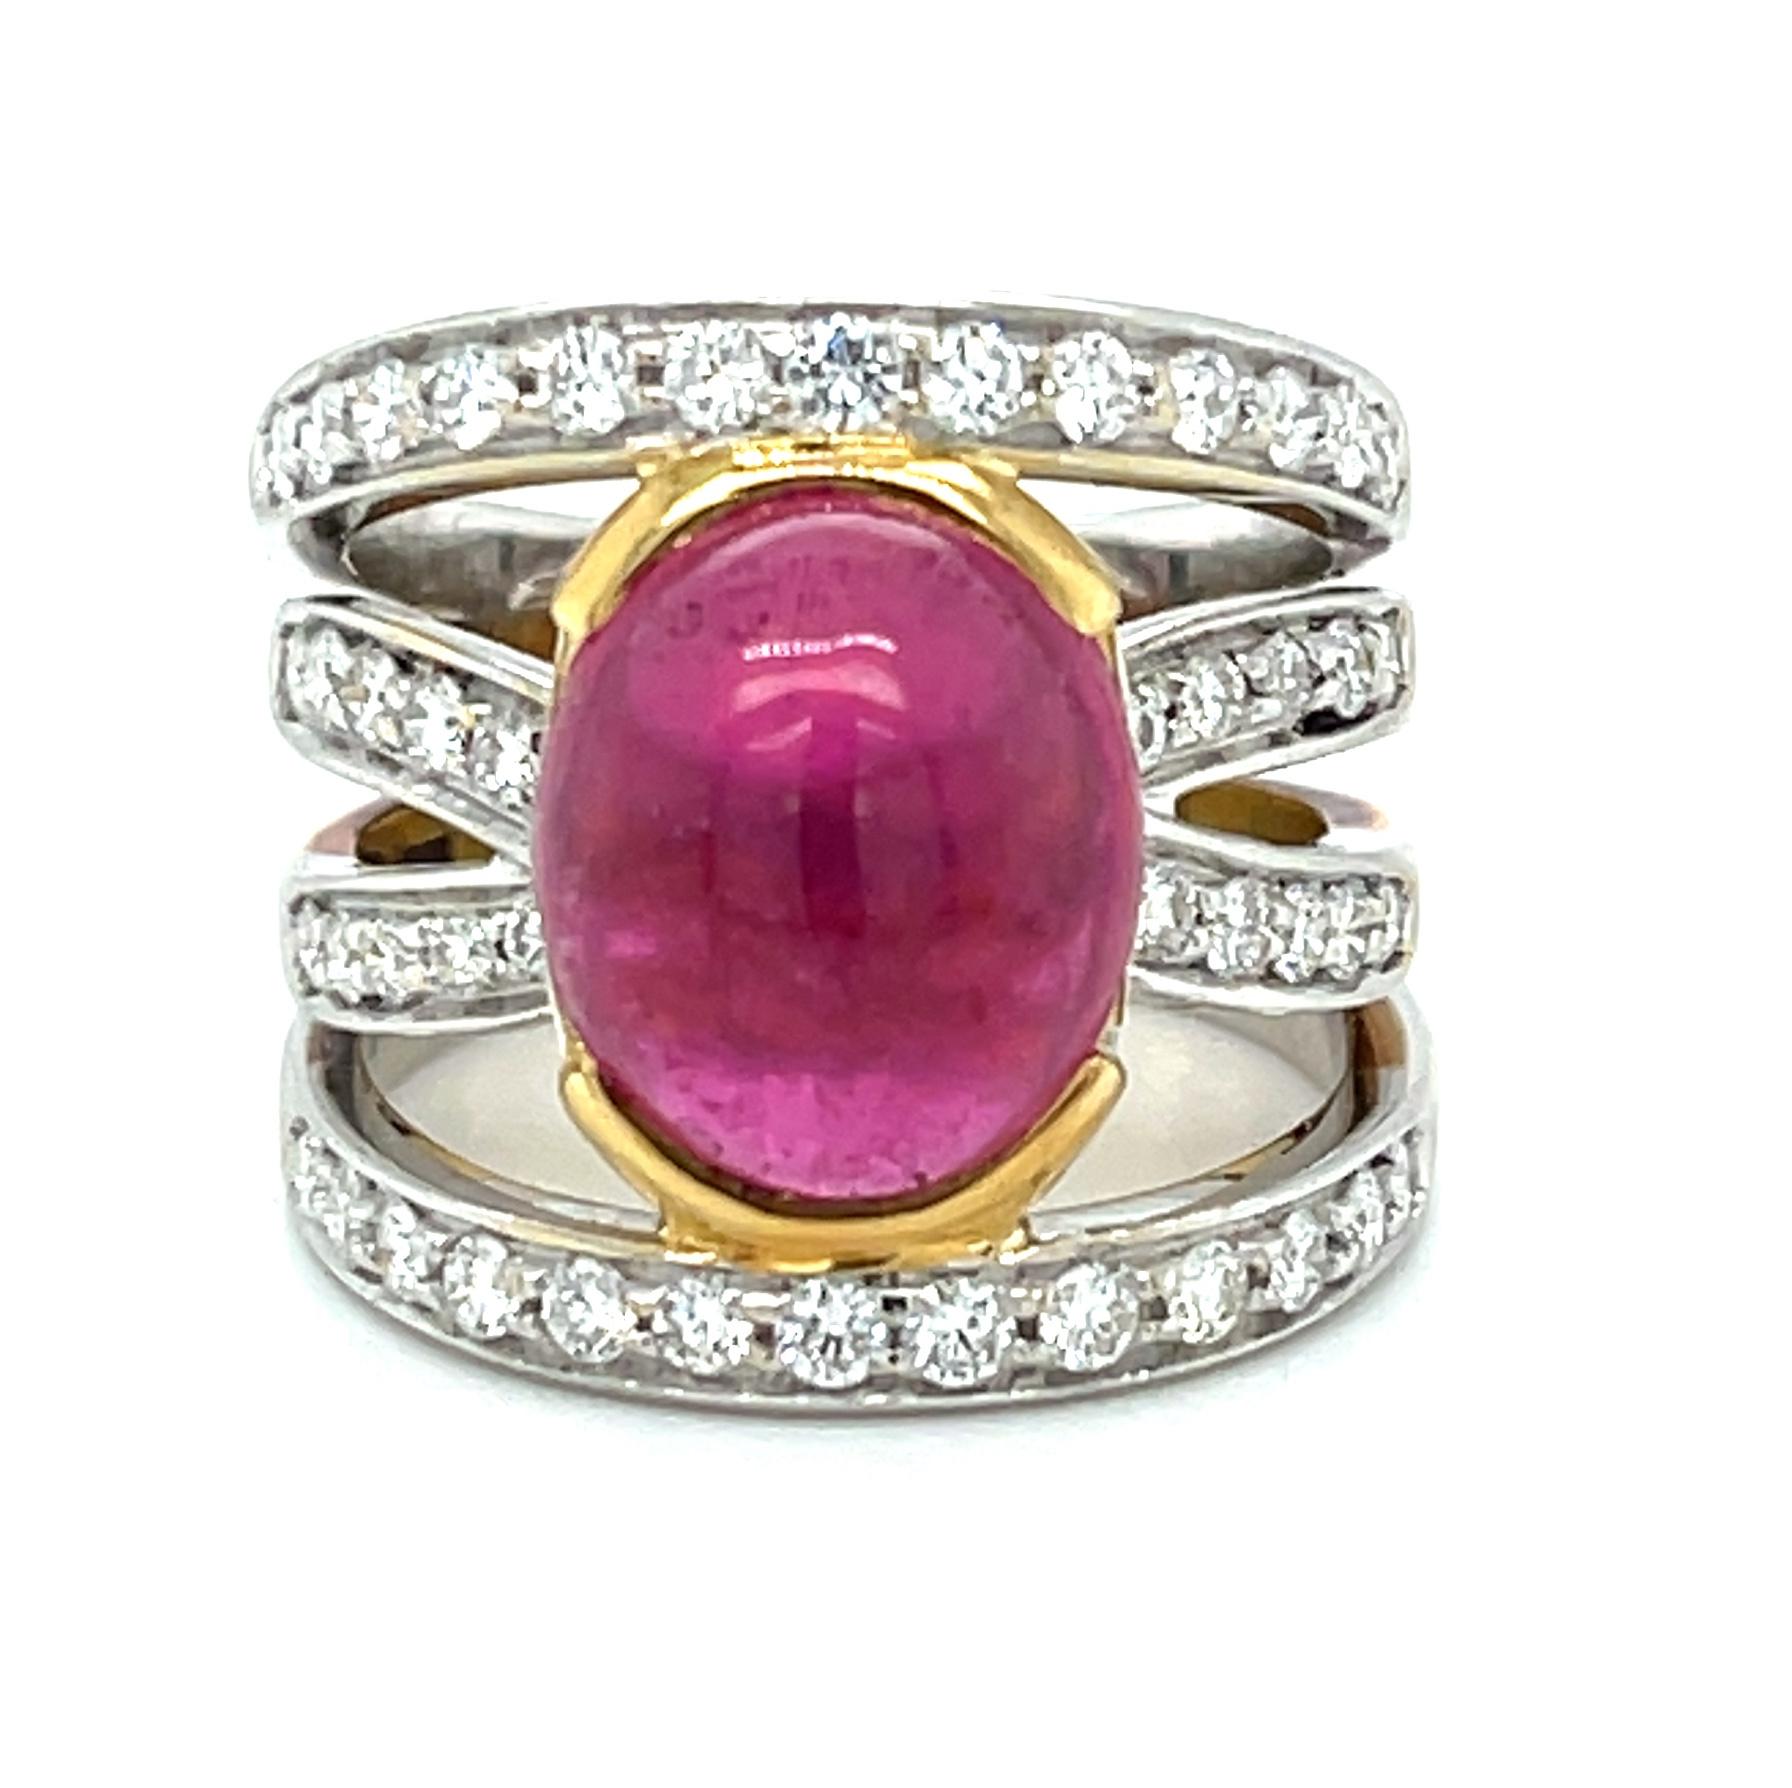 Dieser fuchsia-rosa Turmalin-Cabochon ist ein Meisterwerk der Natur, eingefasst in einen wunderschönen Ring aus 18 Karat Gold. Das mit Diamanten besetzte Kreuzband besteht aus einer Mischung aus 18-karätigem Weiß- und Gelbgold und macht diesen Ring